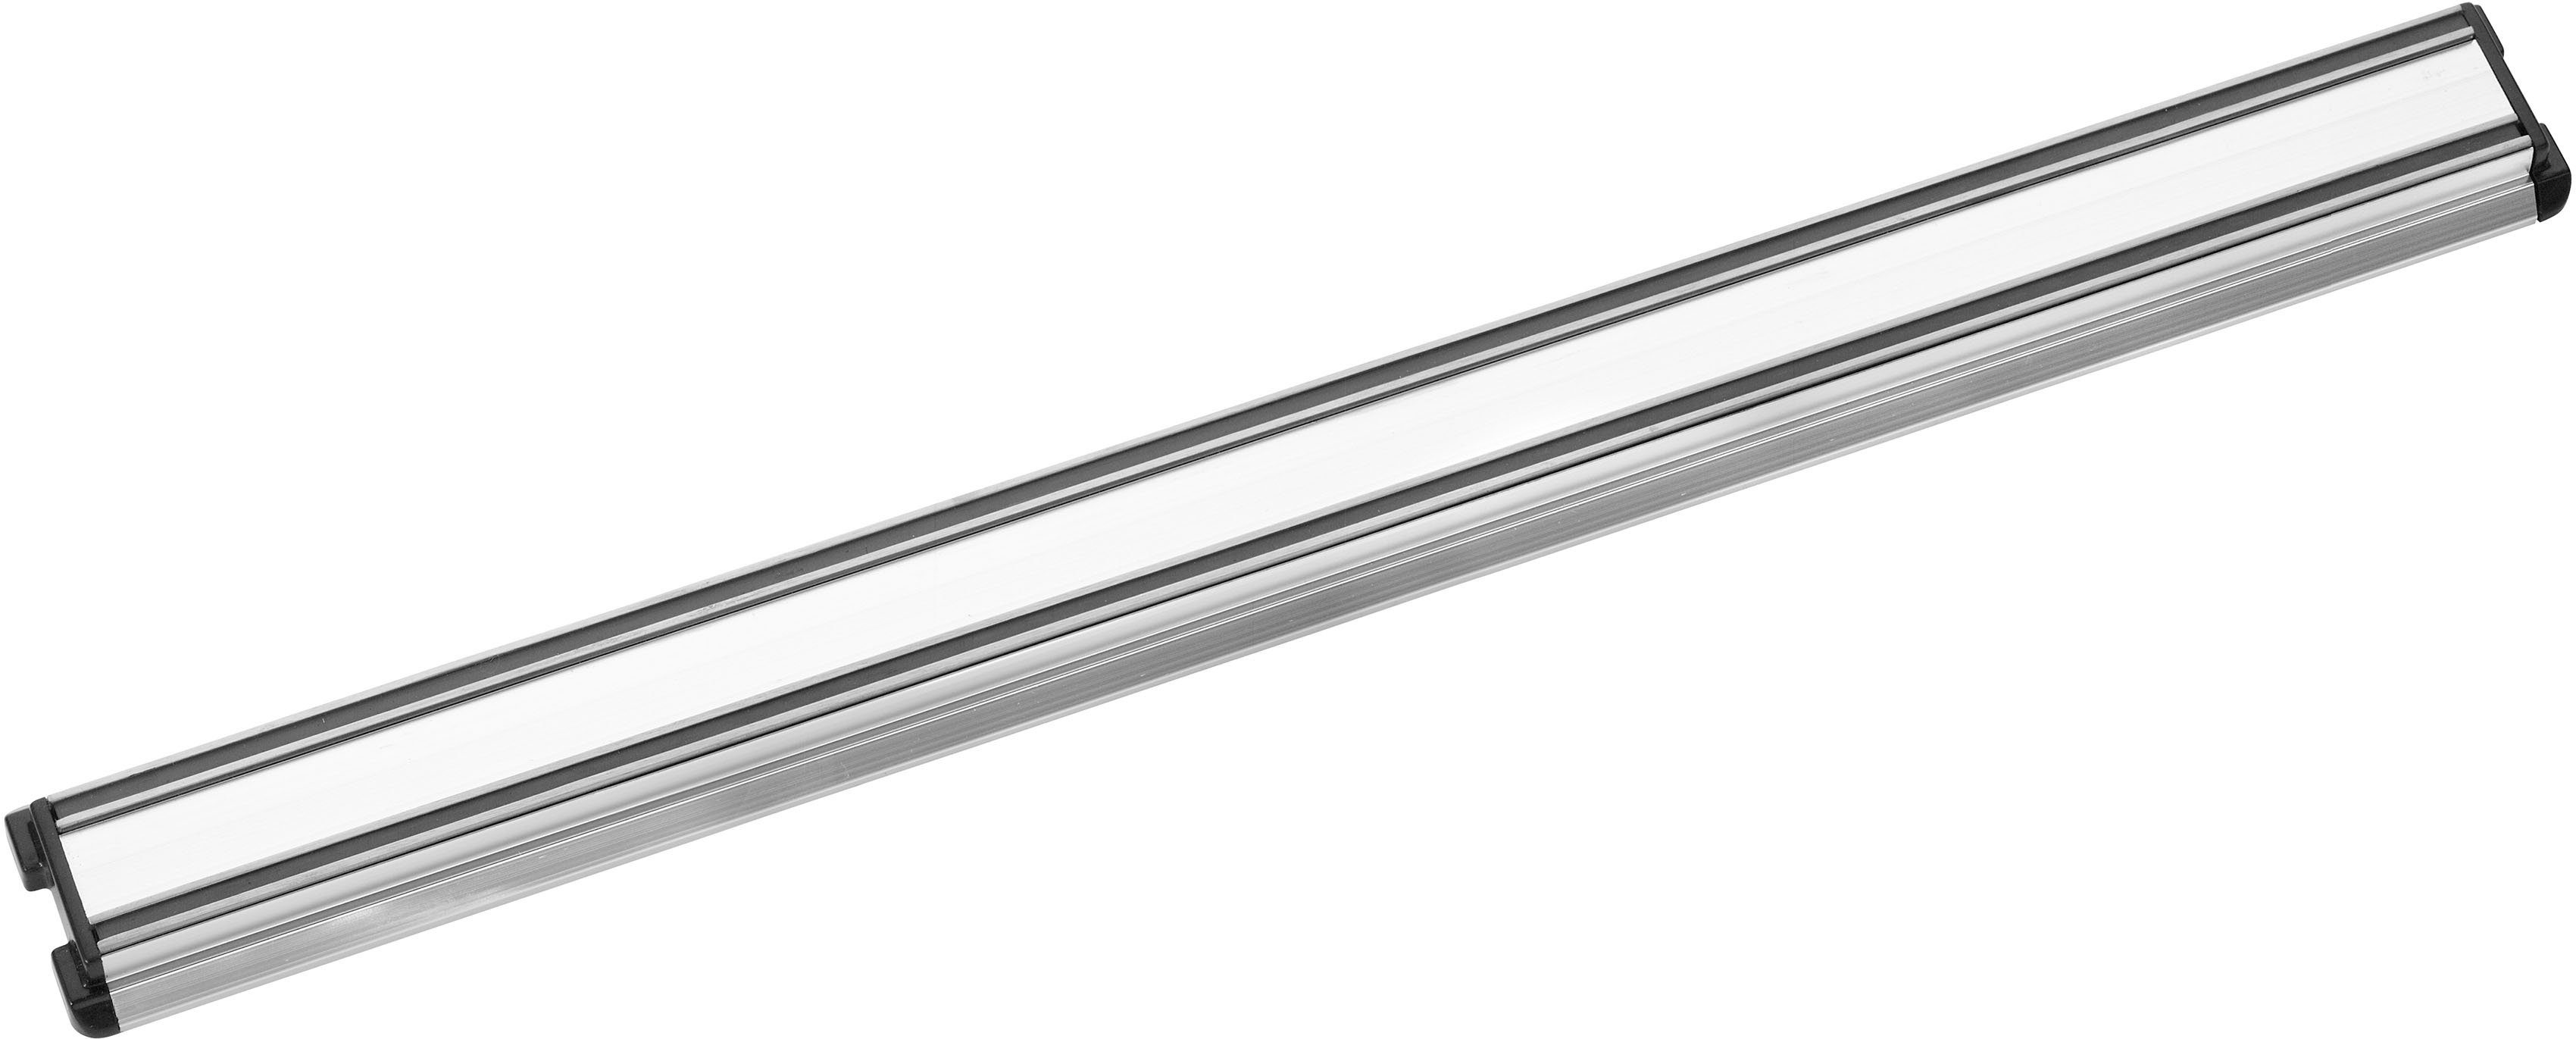 PINTINOX Wand-Magnet Messer-Leiste Coltelli Professional (1tlg), zum Aufhängen von Messern und Küchenhelfern